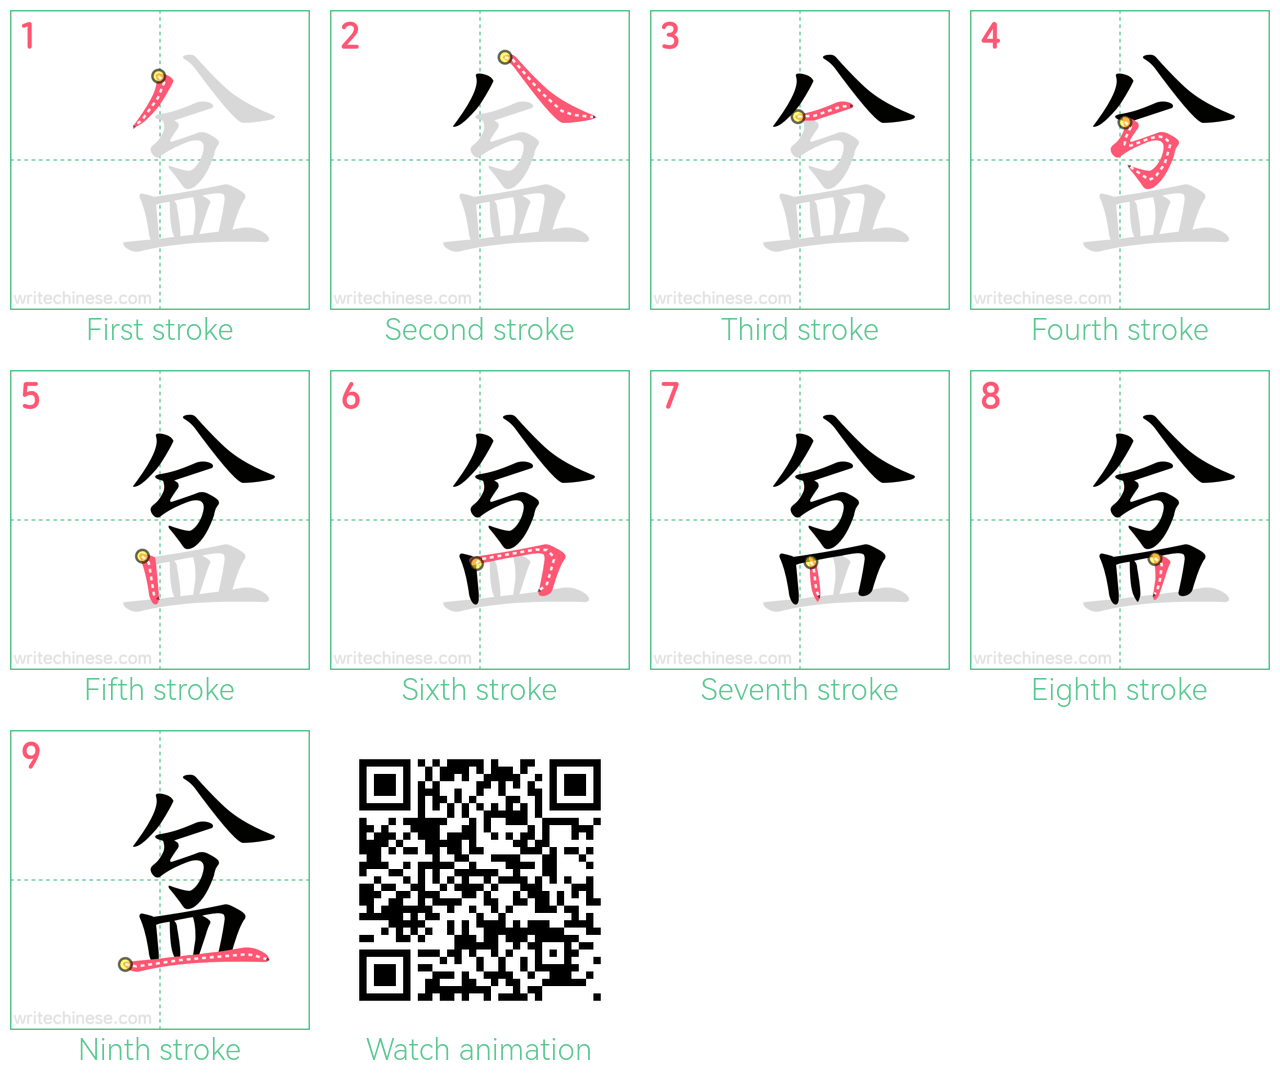 㿽 step-by-step stroke order diagrams